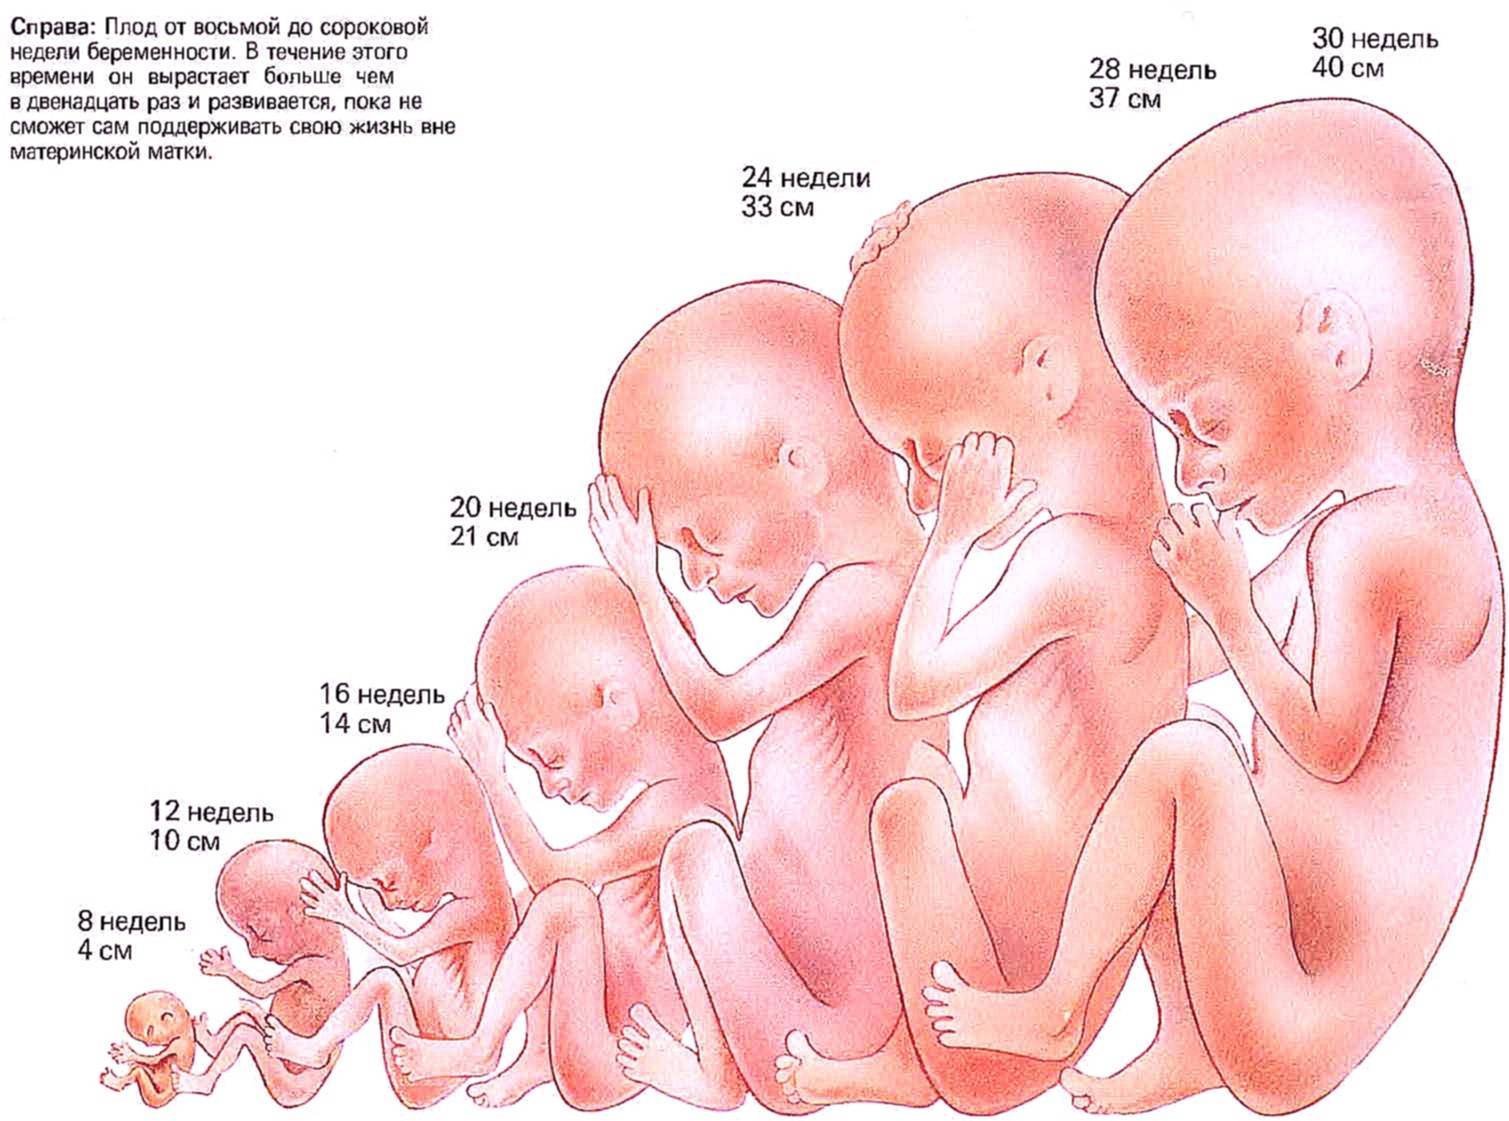 19 неделя беременности где расположен малыш: рекомендации на 19 неделе беременности • твоя семья - информационный семейный портал